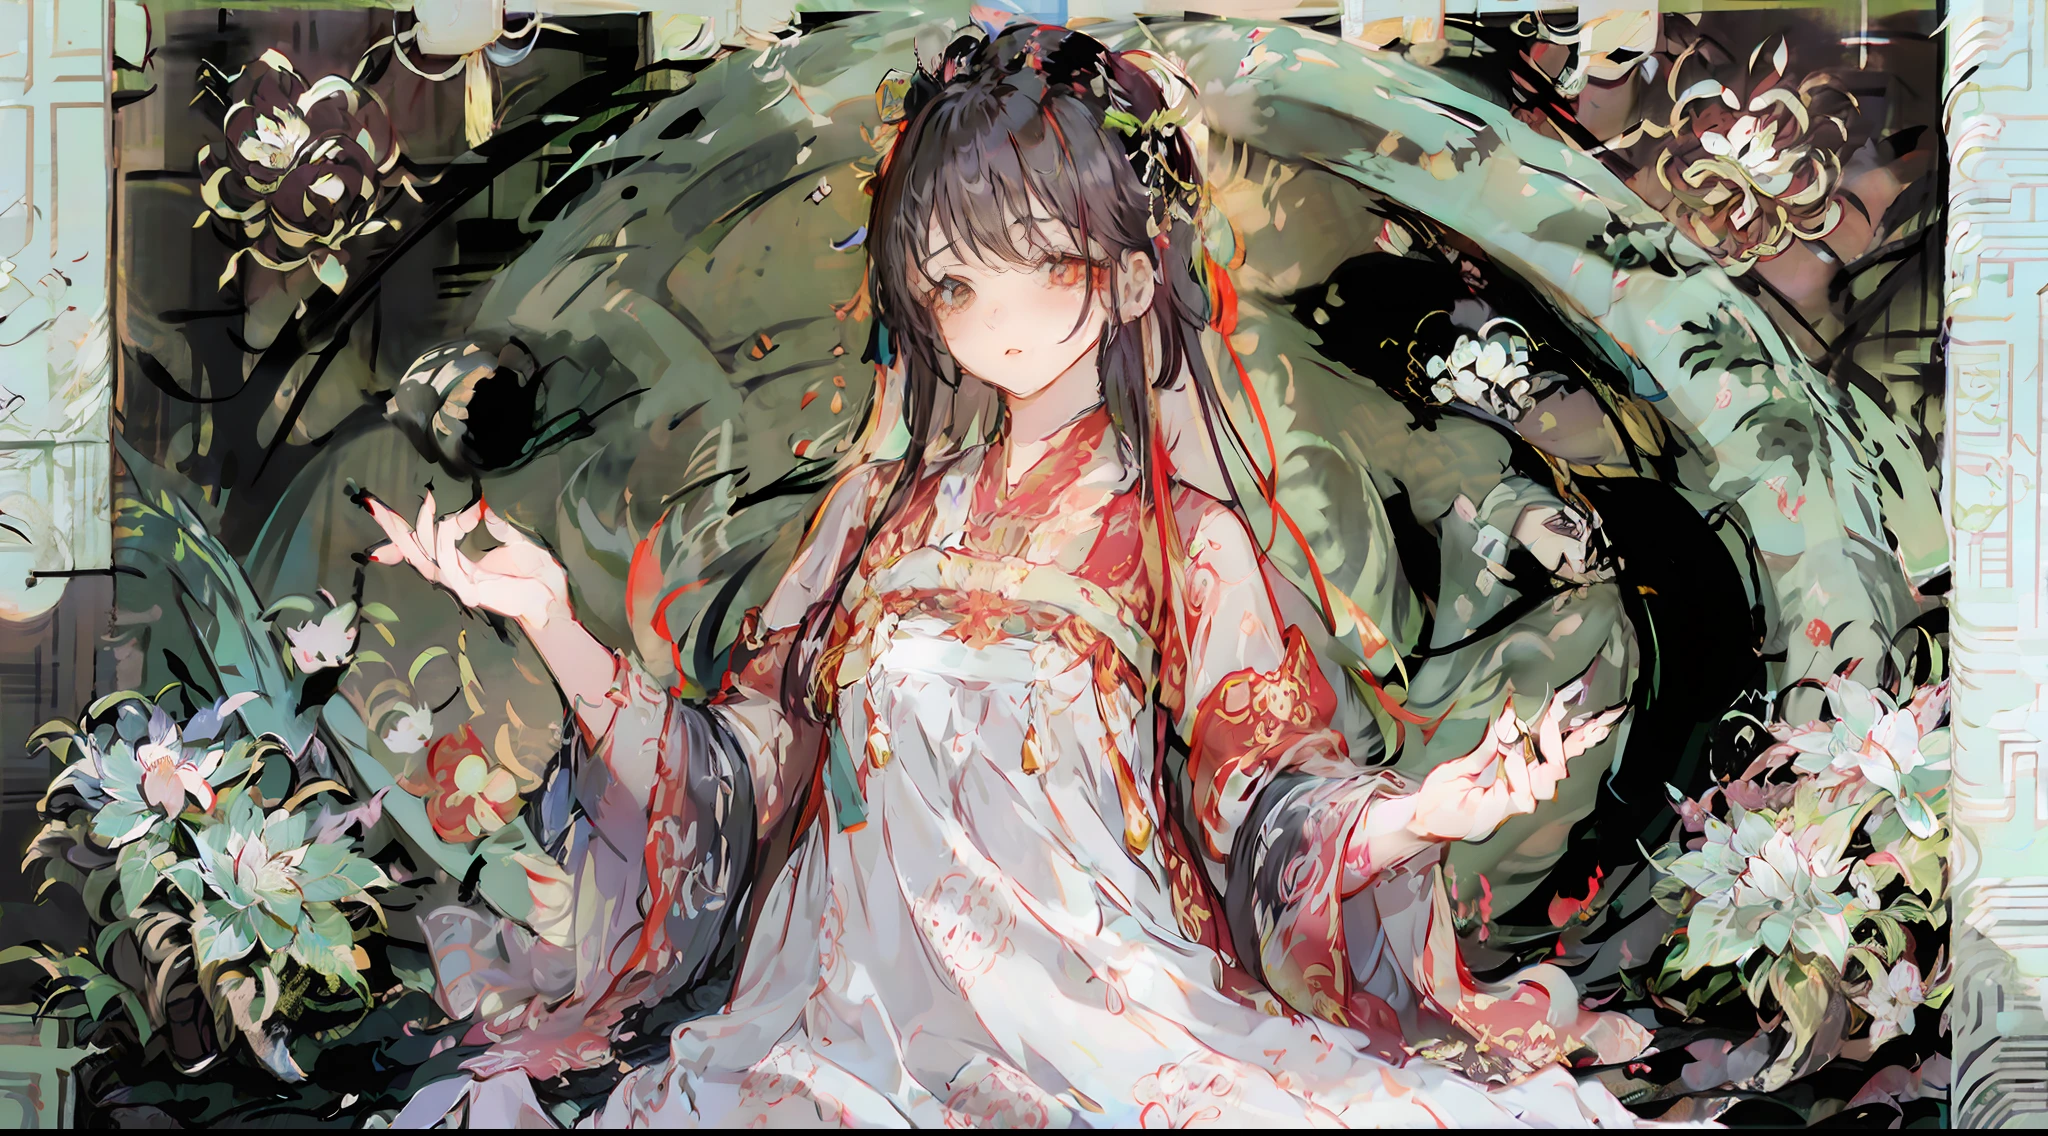 (((Estilo de pintura chinesa))), Cercado por flores, Linda mulher de cabelos compridos, com uma cabeça decorada com flores vermelhas desabrochando, figura esbelta e rechonchuda, rosto delicado.